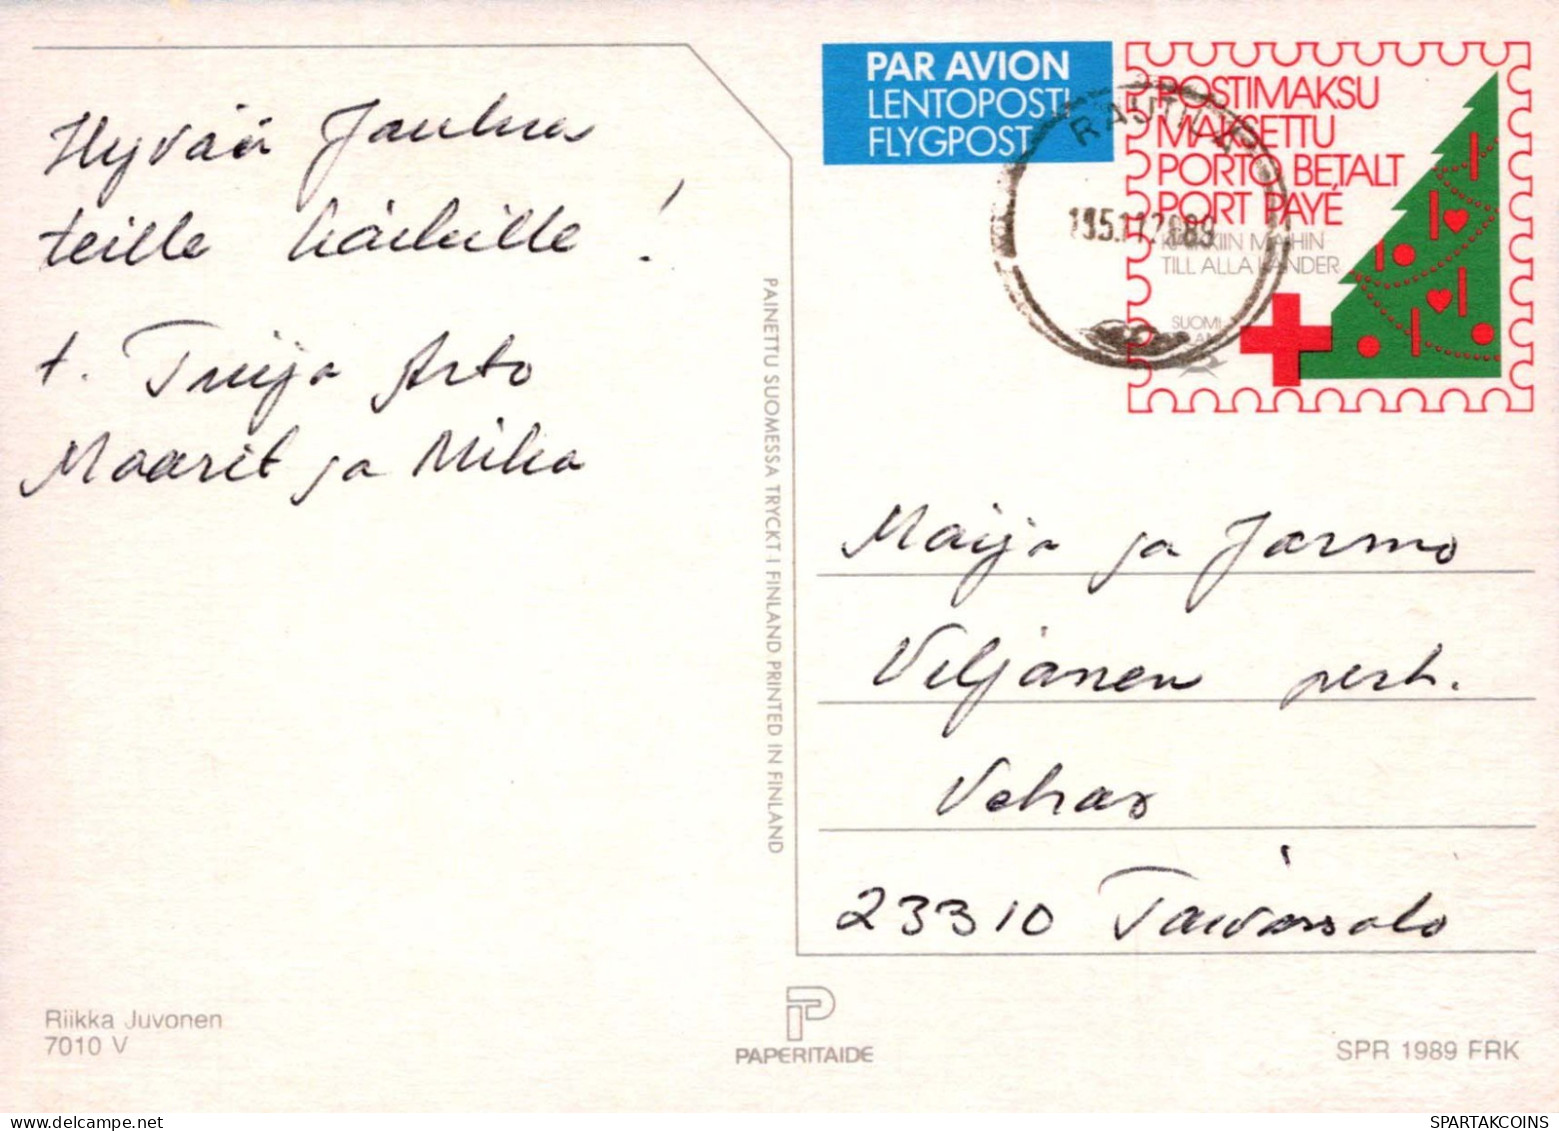 PÈRE NOËL Bonne Année Noël Vintage Carte Postale CPSM #PBB079.FR - Kerstman